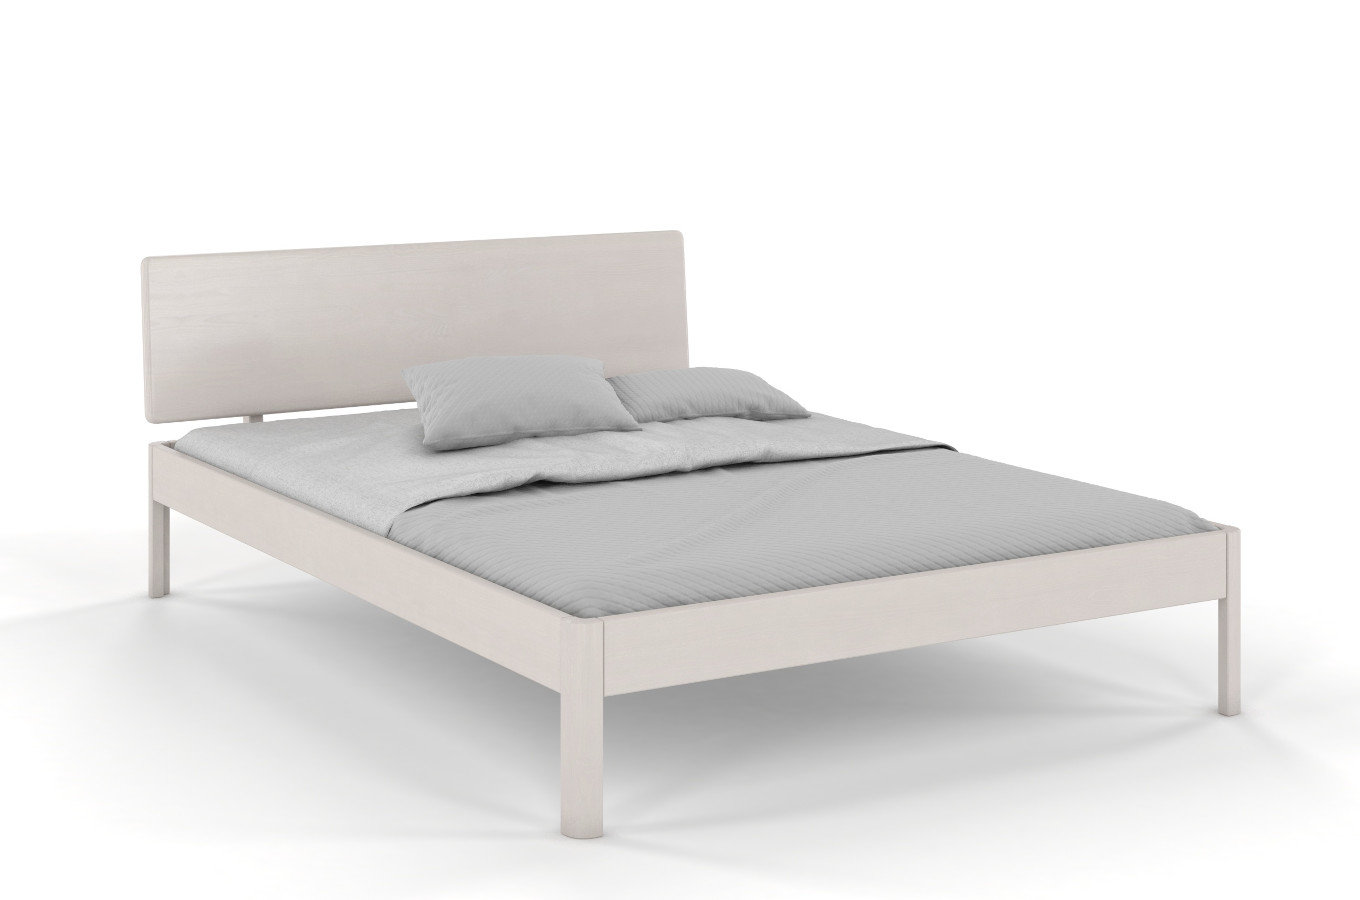  Łóżko drewniane sosnowe Visby AMMER / 180x200 cm, kolor biały